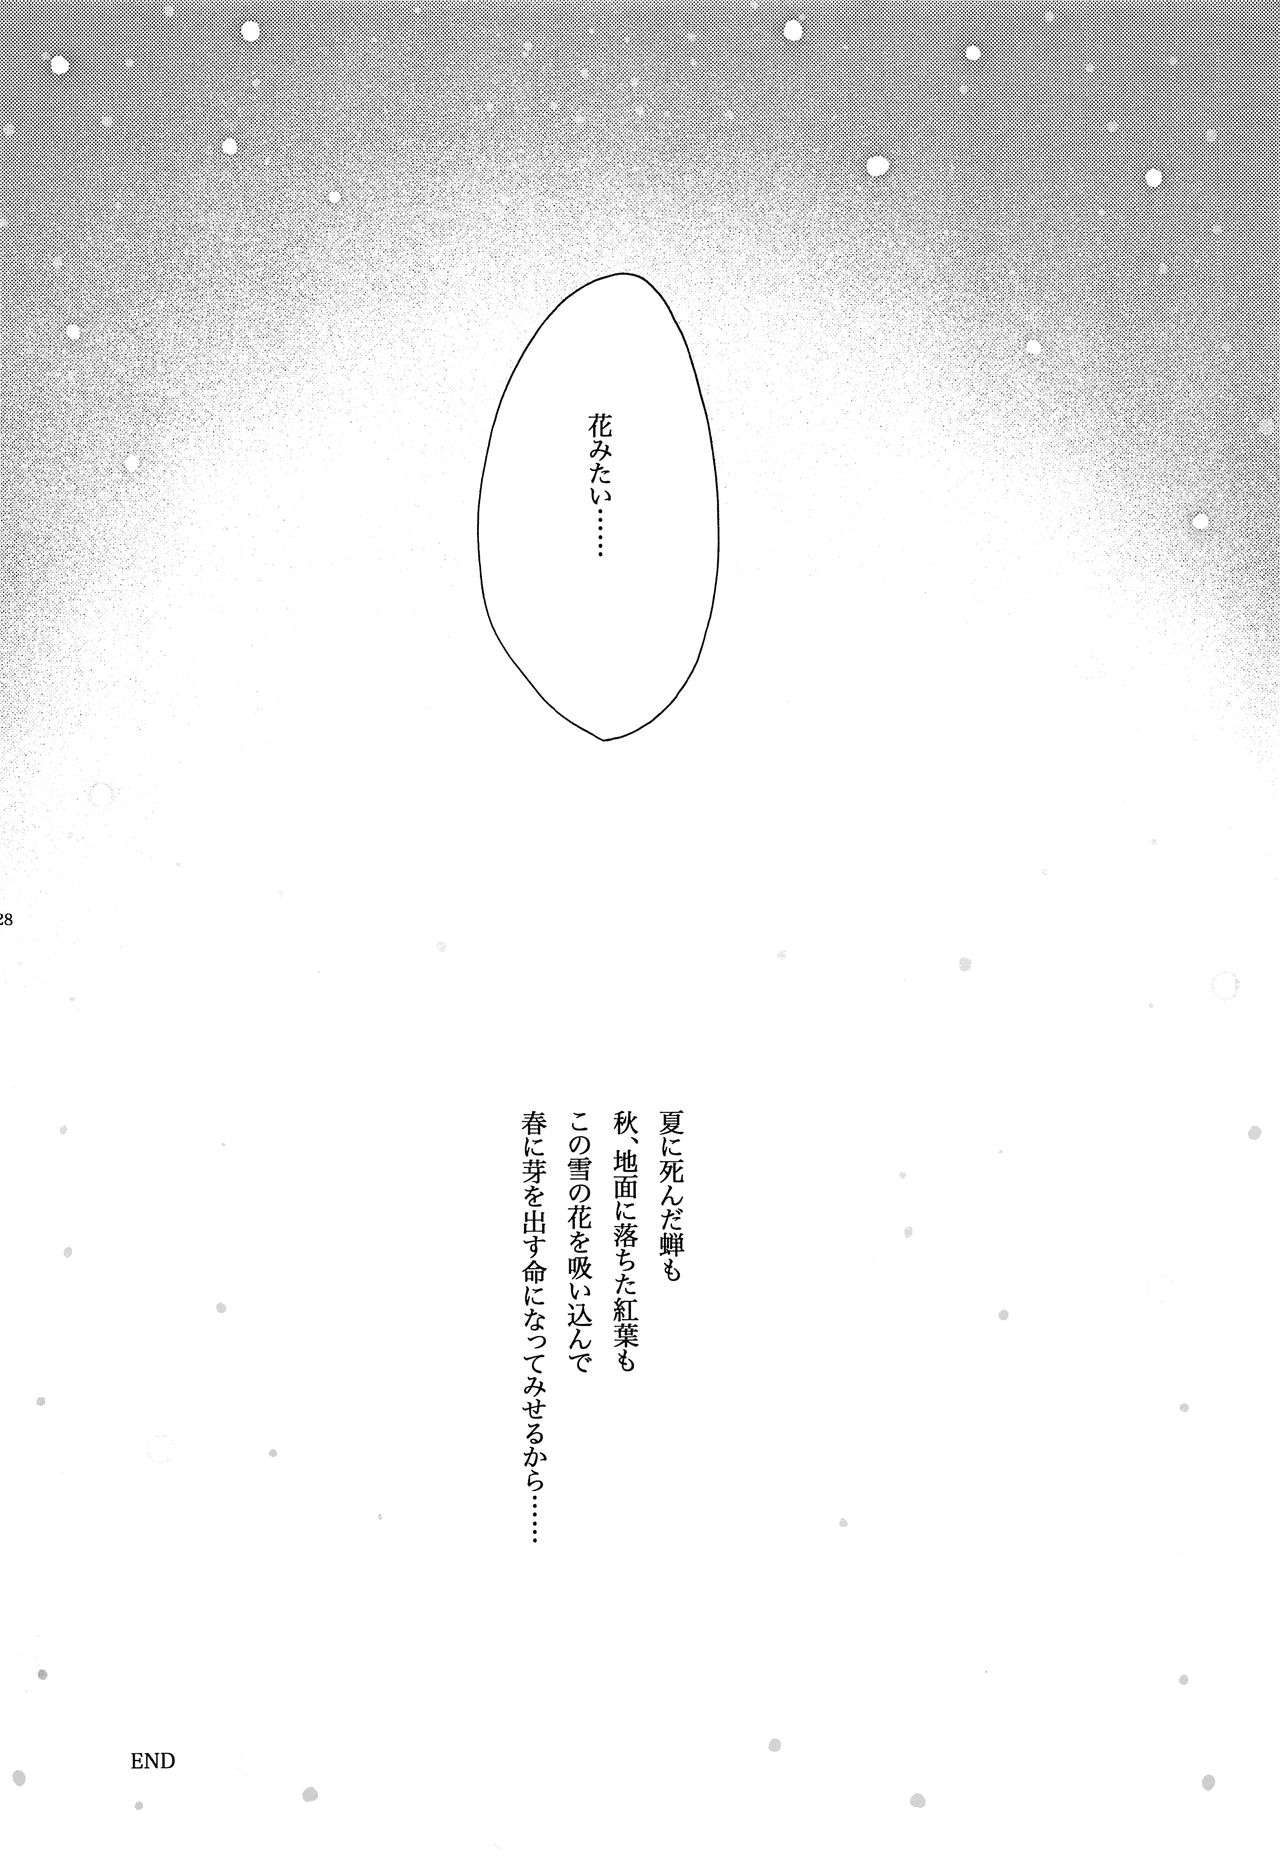 (C83) [とむぽん (GAZERU)] キセツノウタ ナツノセミシリーズ再録本上巻 (VOCALOID)